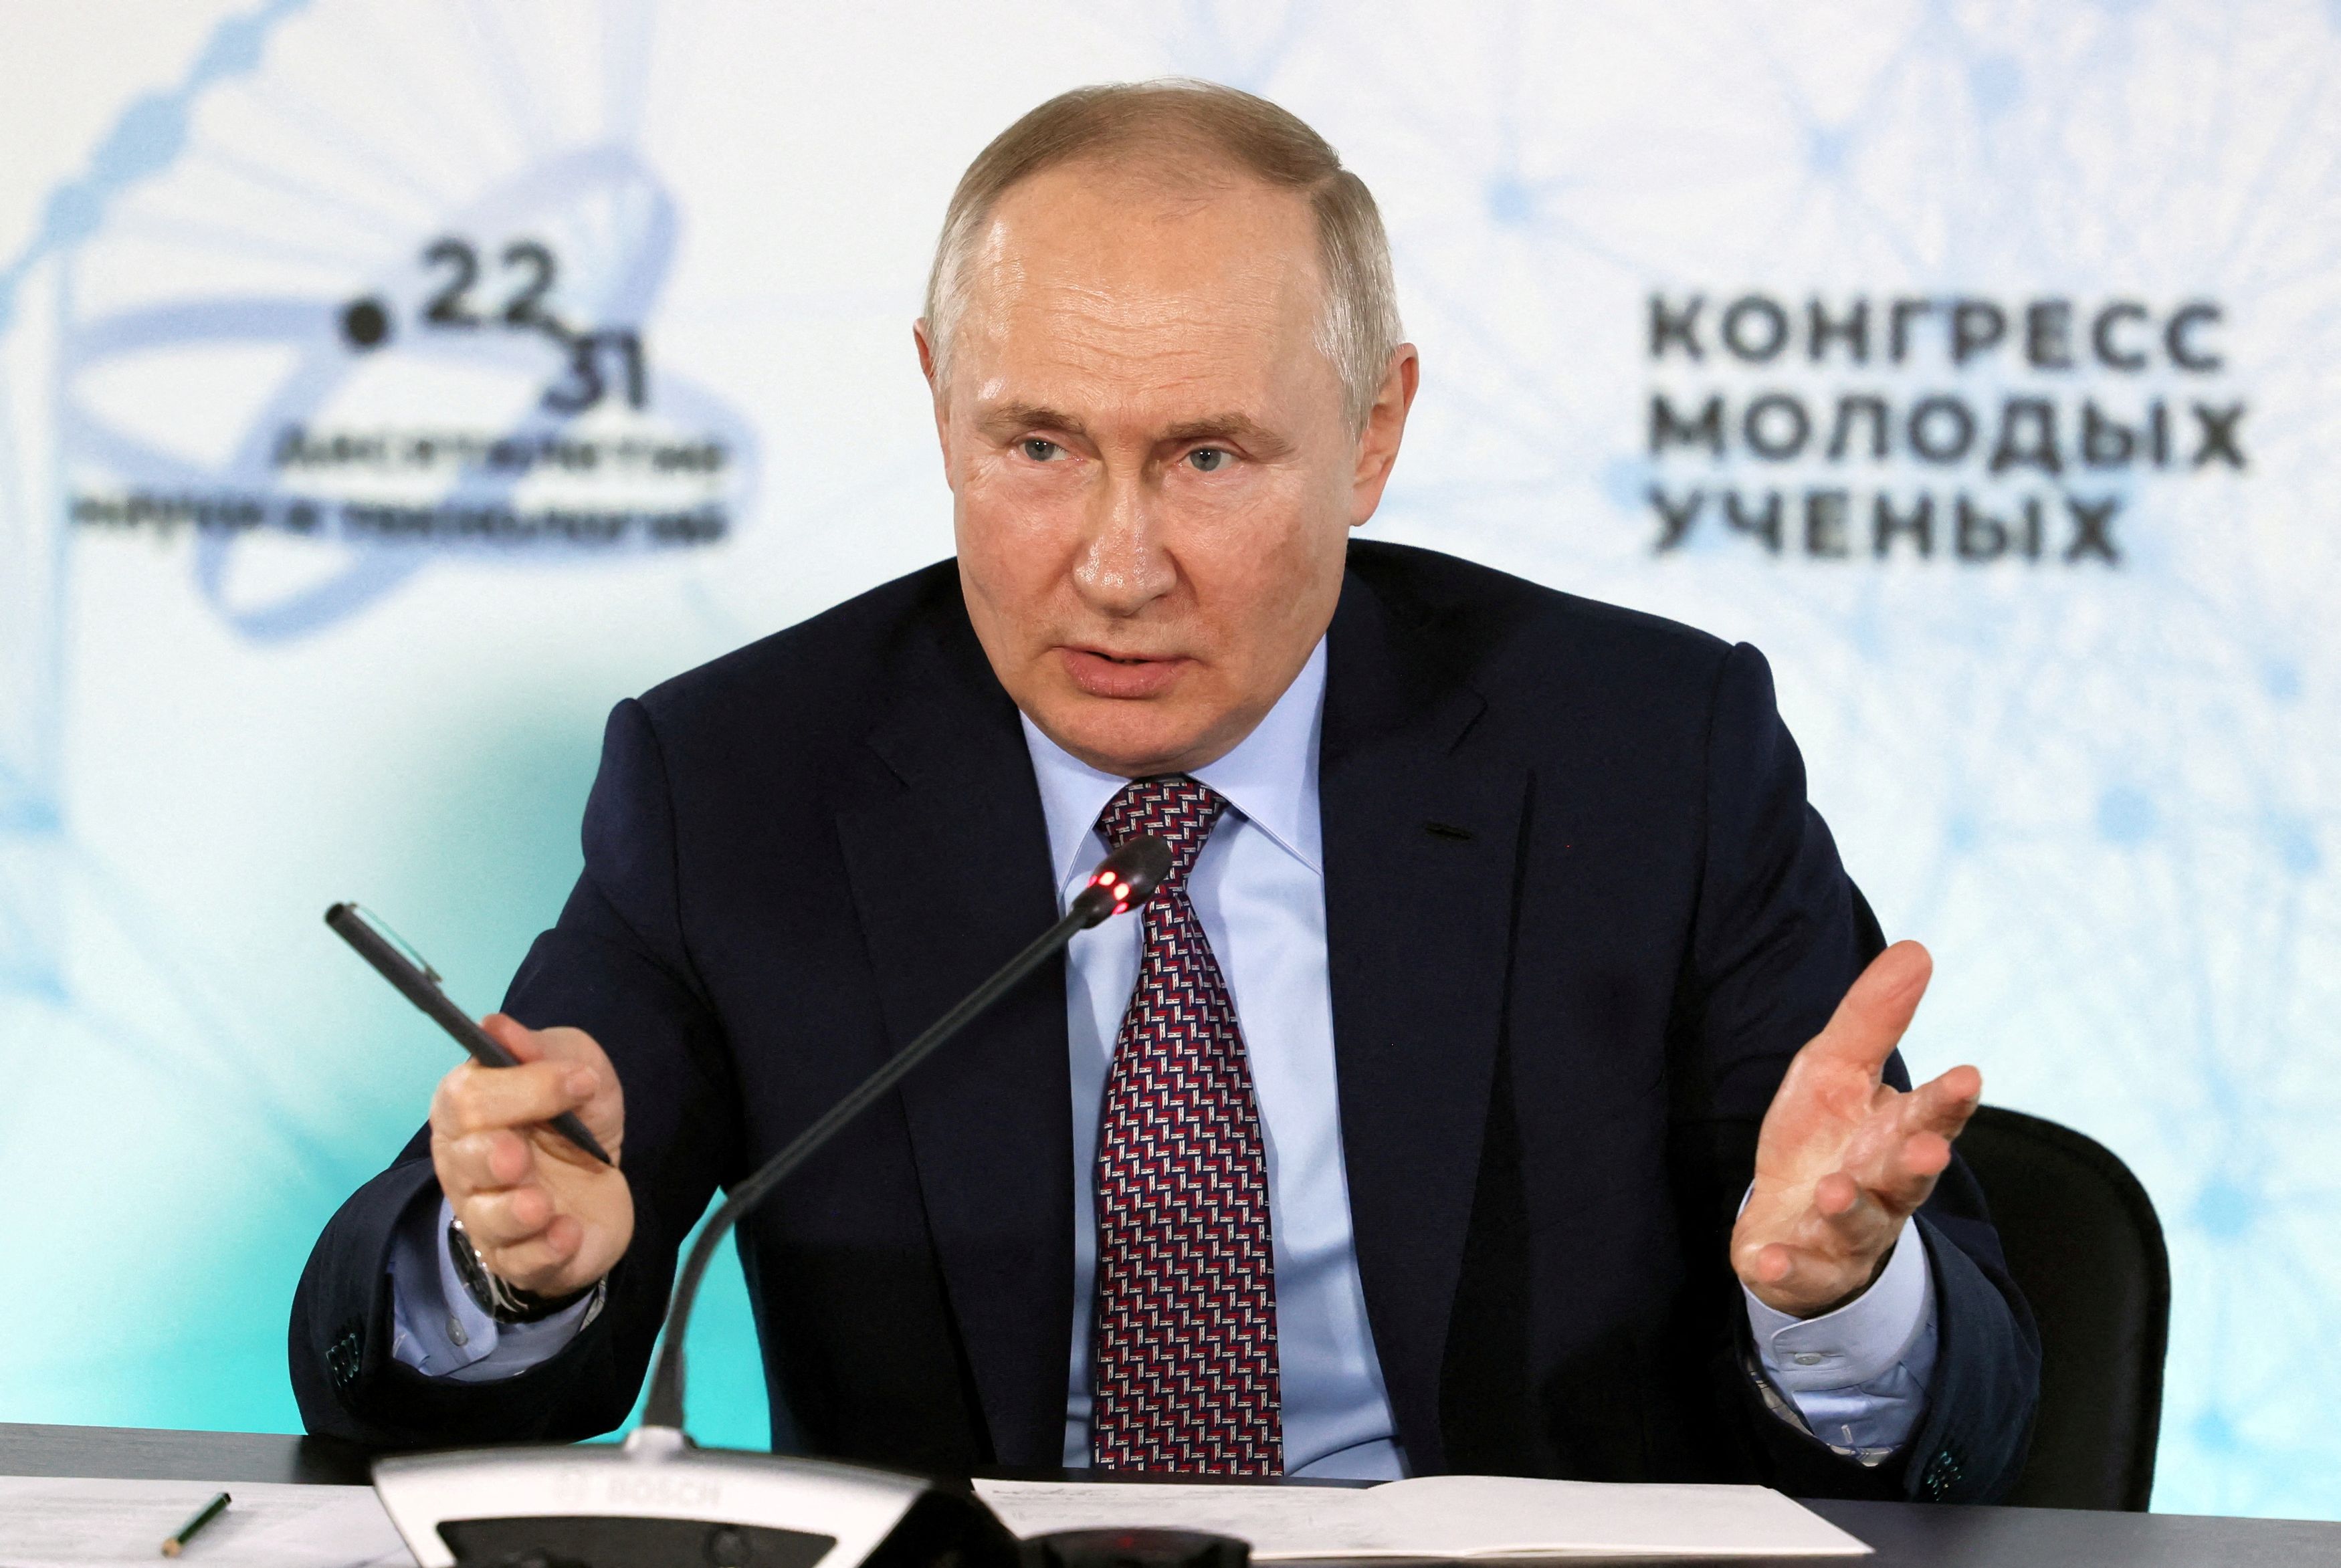 Ρωσία: Δεν κάνει πίσω ο Πούτιν - Η Μόσχα δεν θα εξάγει πετρέλαιο που υπόκειται στο δυτικό πλαφόν τιμής